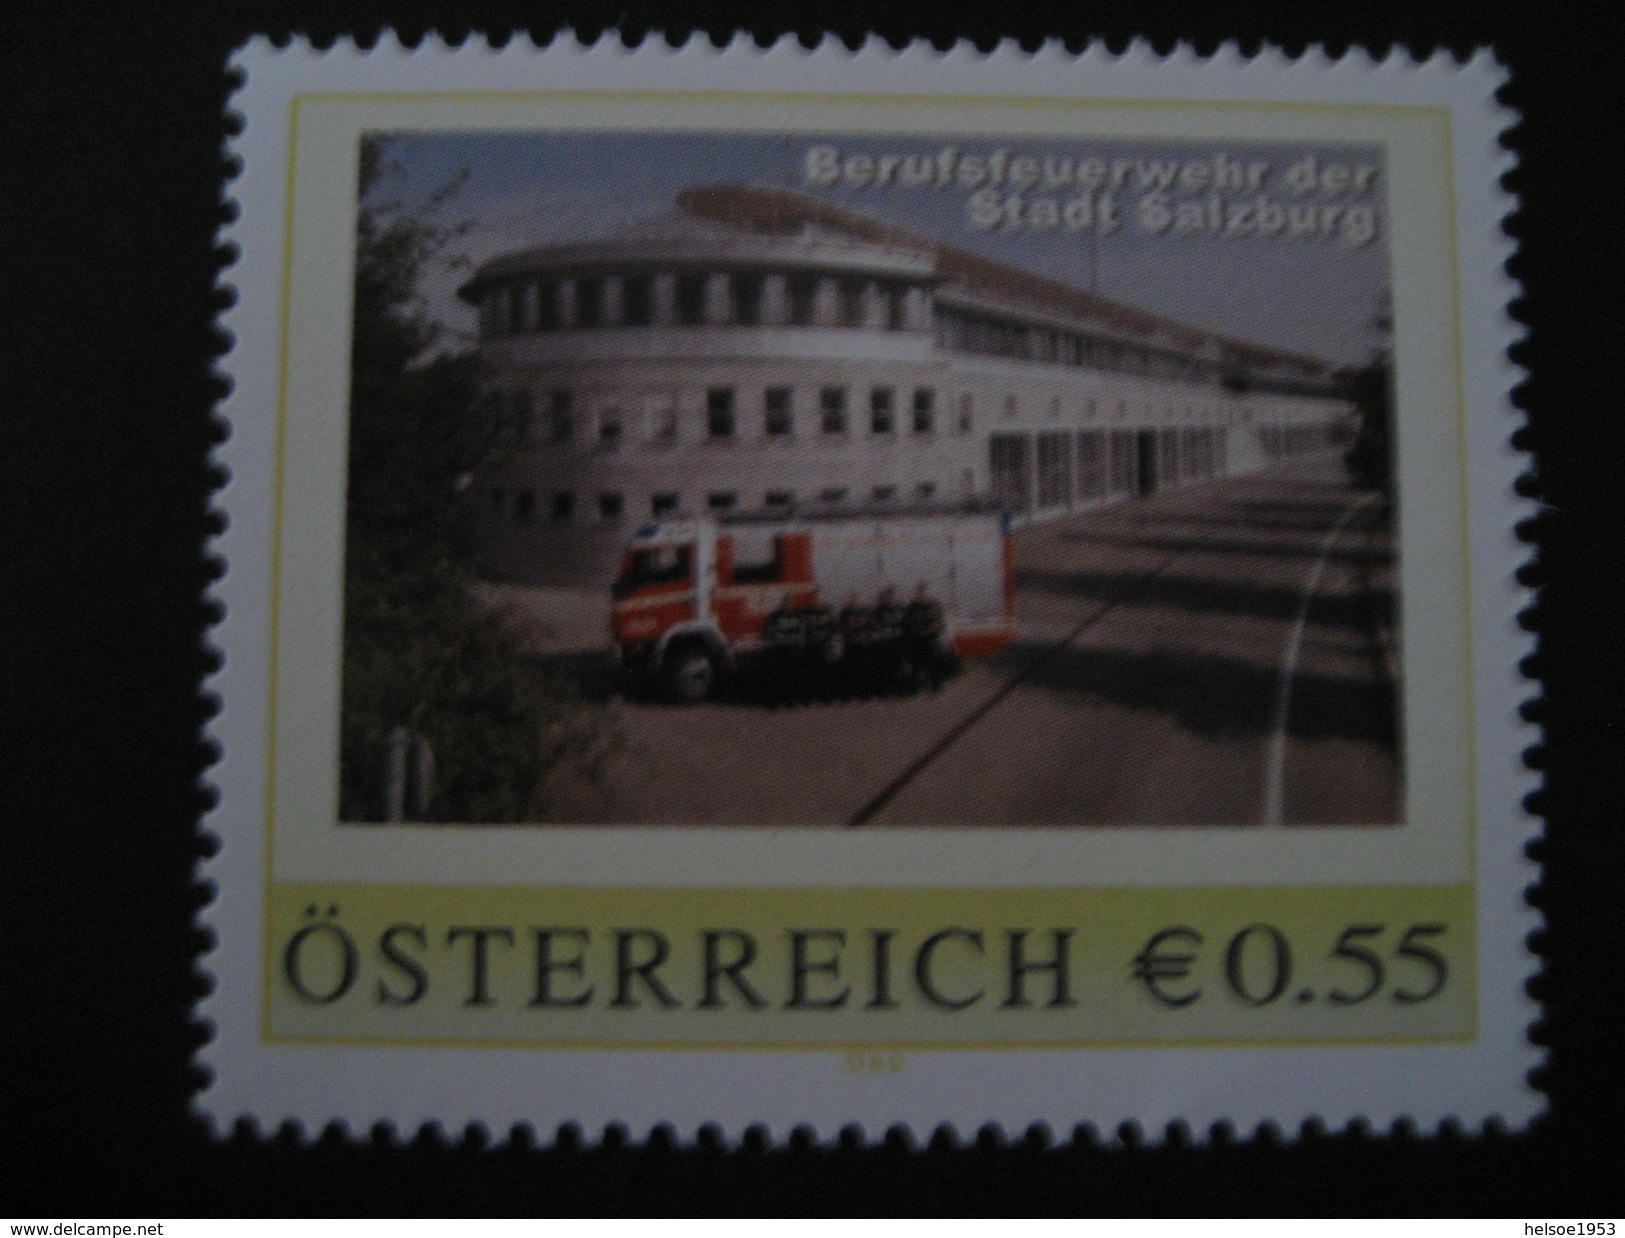 Pers.BM 8007112** Salzburg Berufsfeuerwehr, Ausgabetag 01.10.05 - Personalisierte Briefmarken